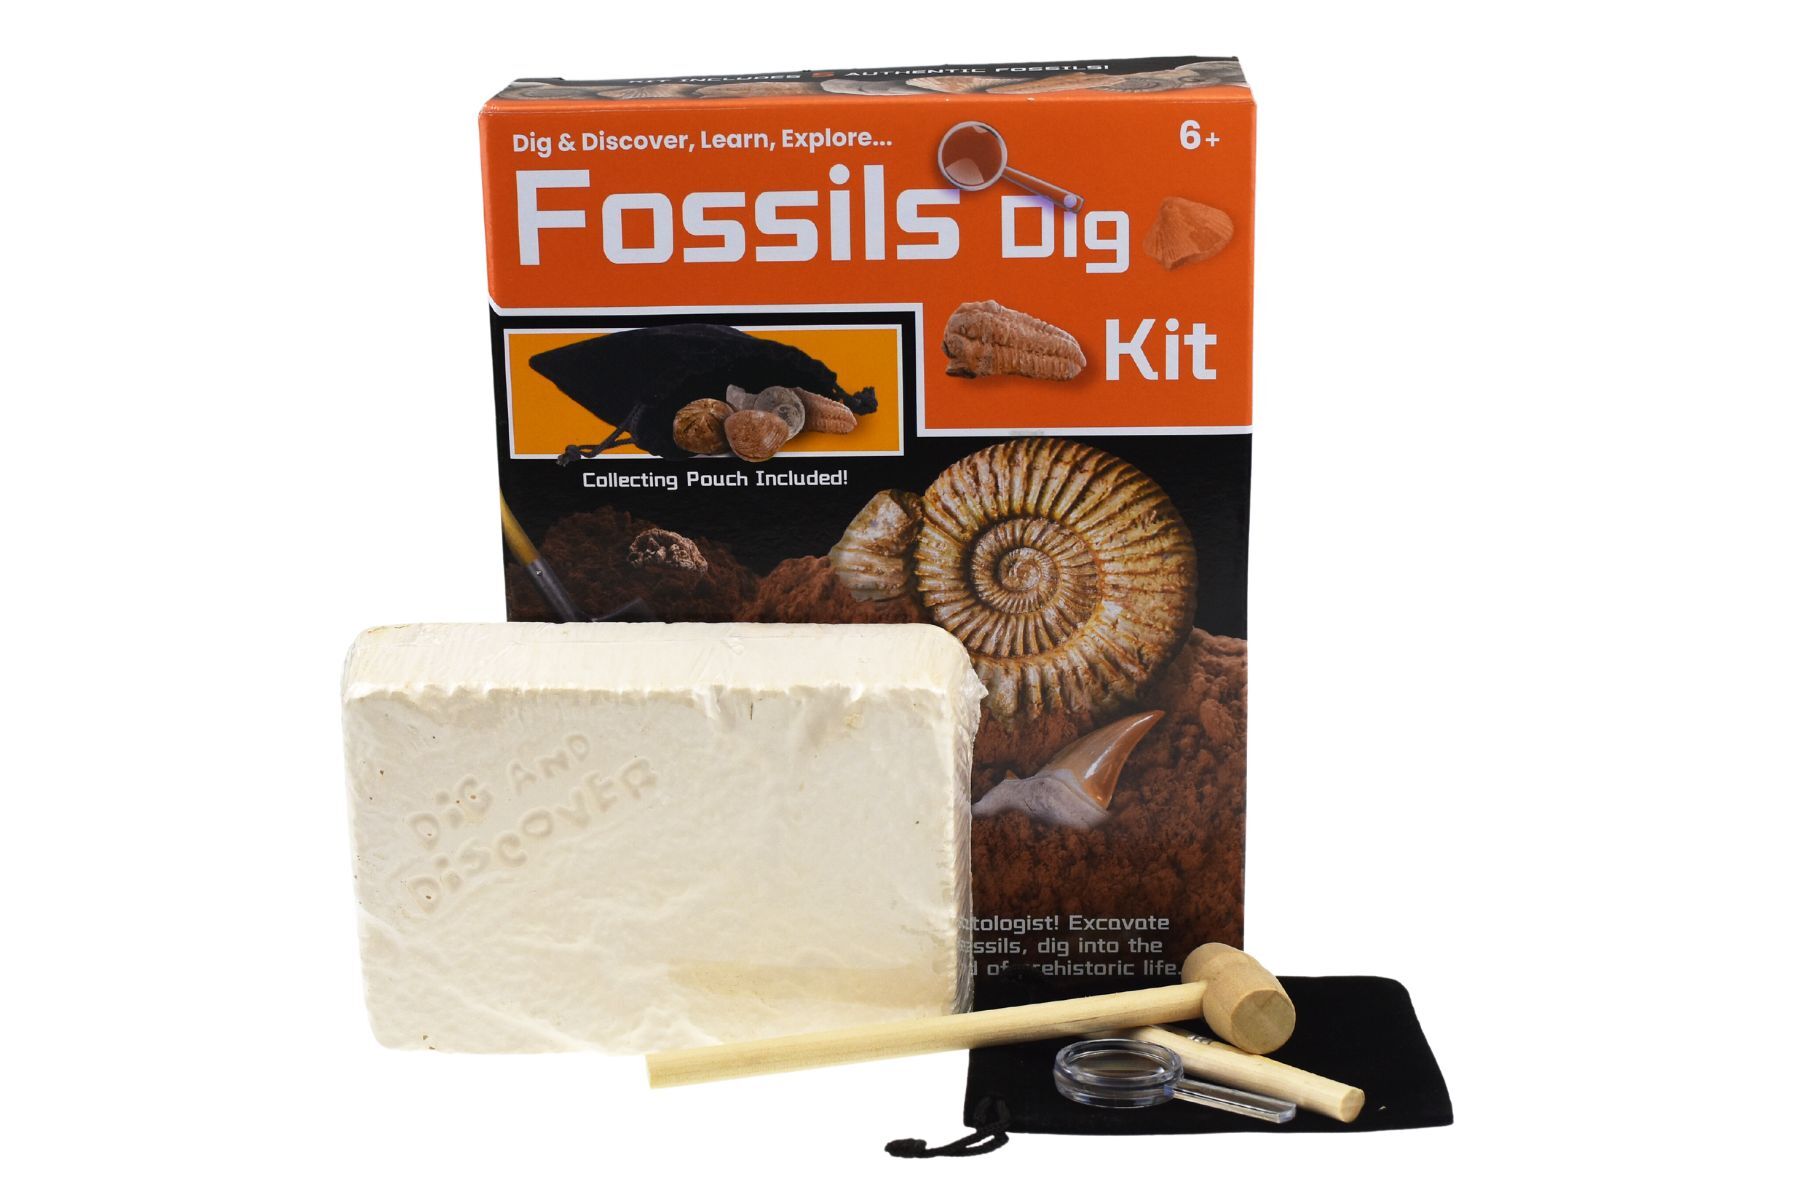 Dig & Discover Fossils Dig Kit - Kids Mega Mart